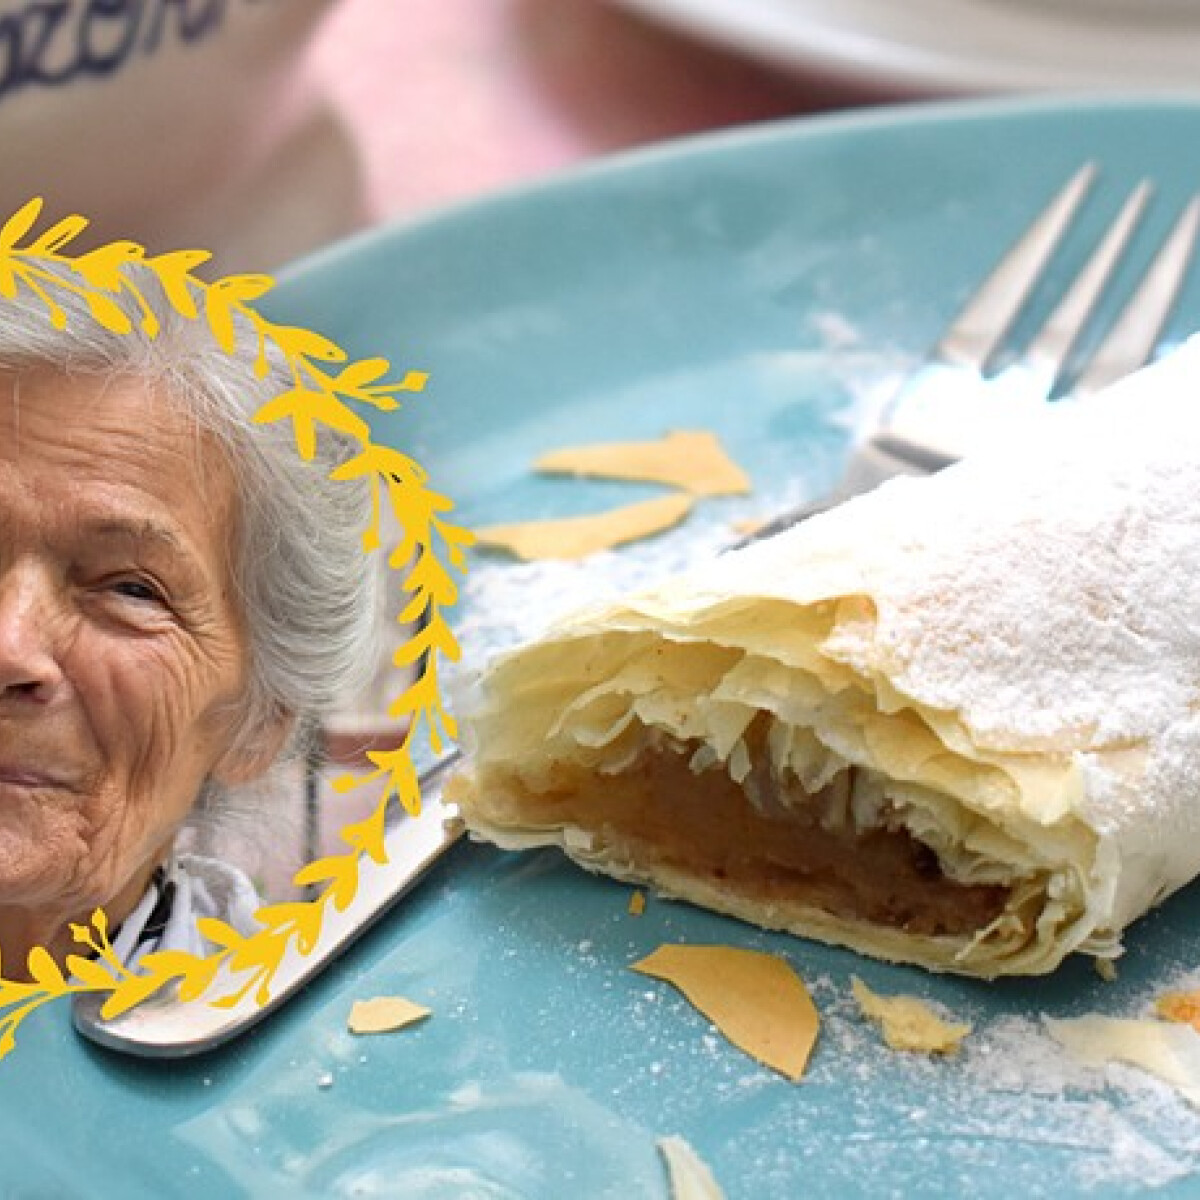 Nagyiprojekt: Rétest sütöttünk a 86 éves Eszter mamával, aki a mai napig egy reggelizőben dolgozik